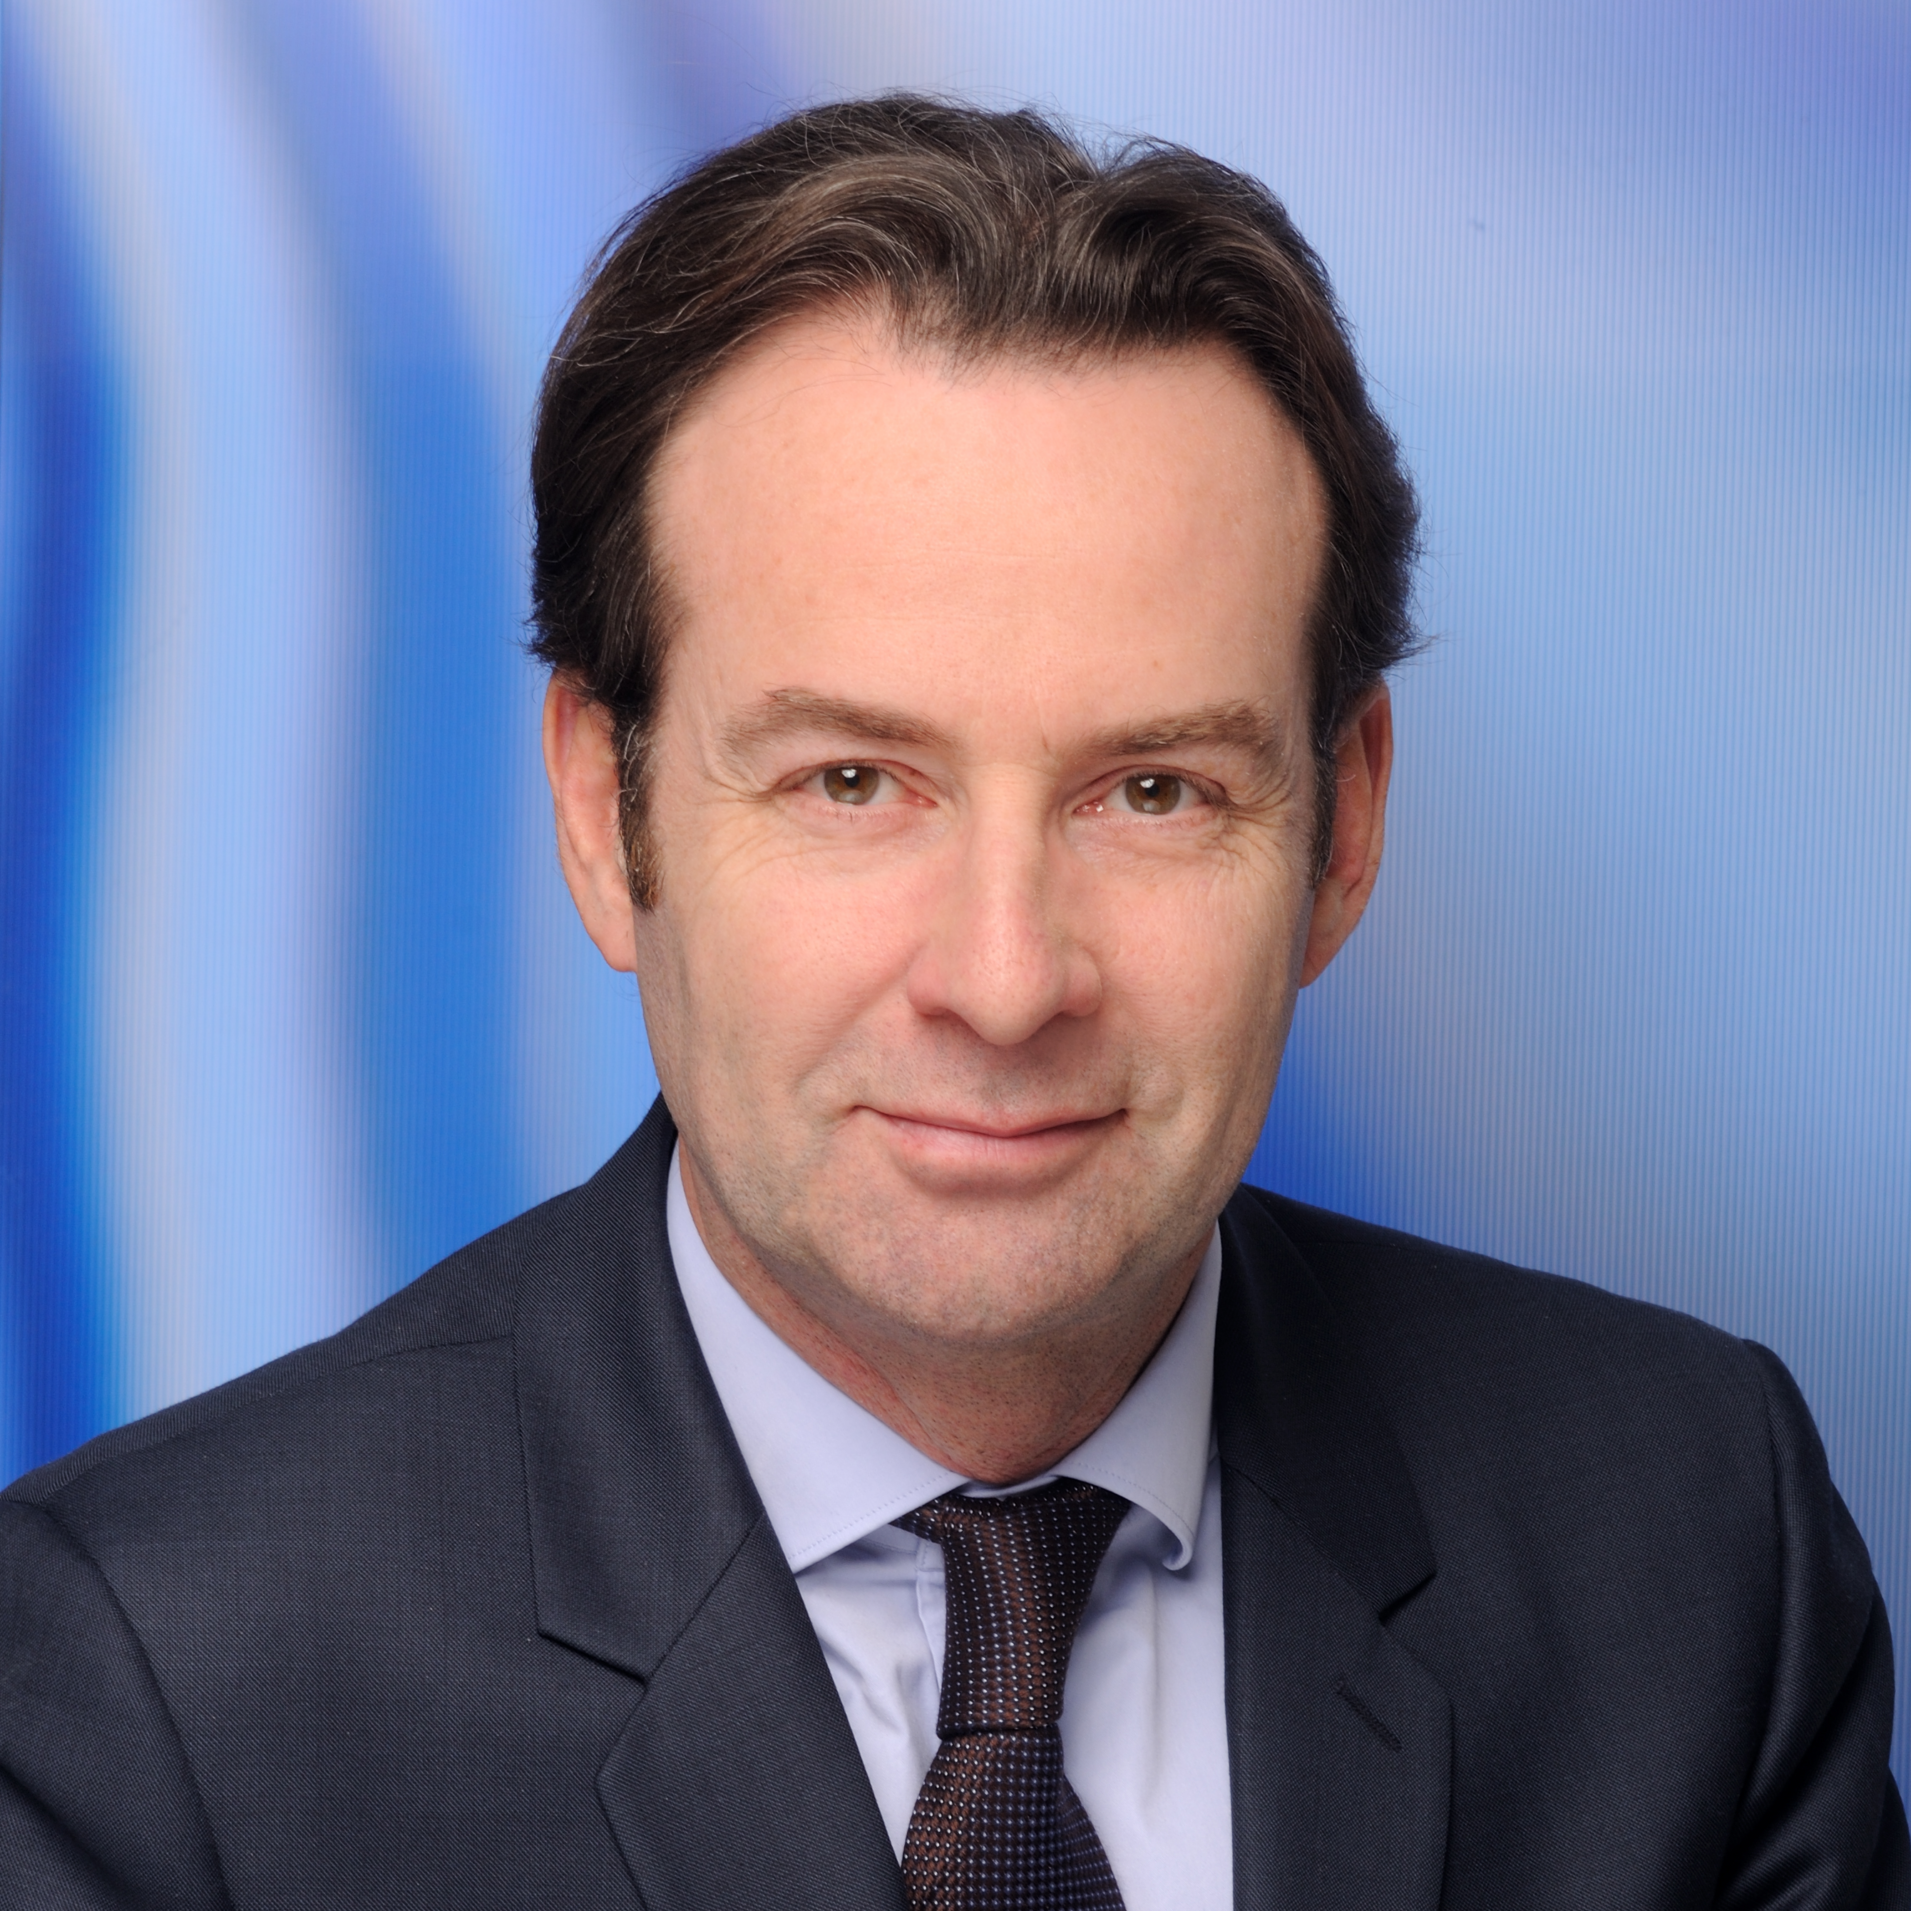 Emmanuel Charlot, Managing Director of Stimulus France